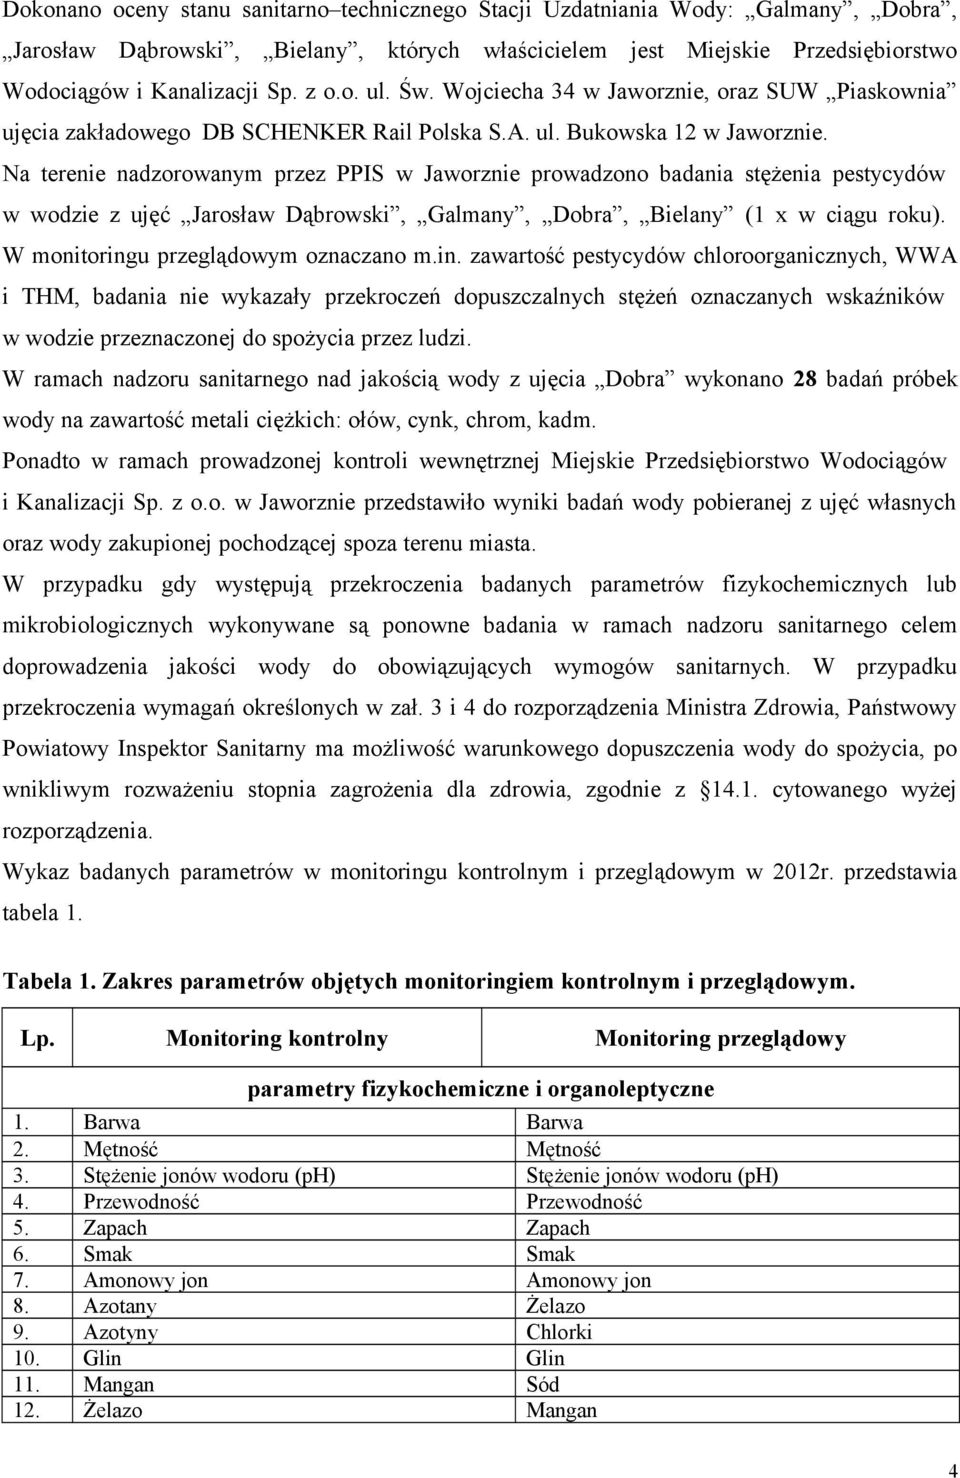 Na terenie nadzorowanym przez PPIS w Jaworznie prowadzono badania stężenia pestycydów w wodzie z ujęć Jarosław Dąbrowski, Galmany, Dobra, Bielany (1 x w ciągu roku).